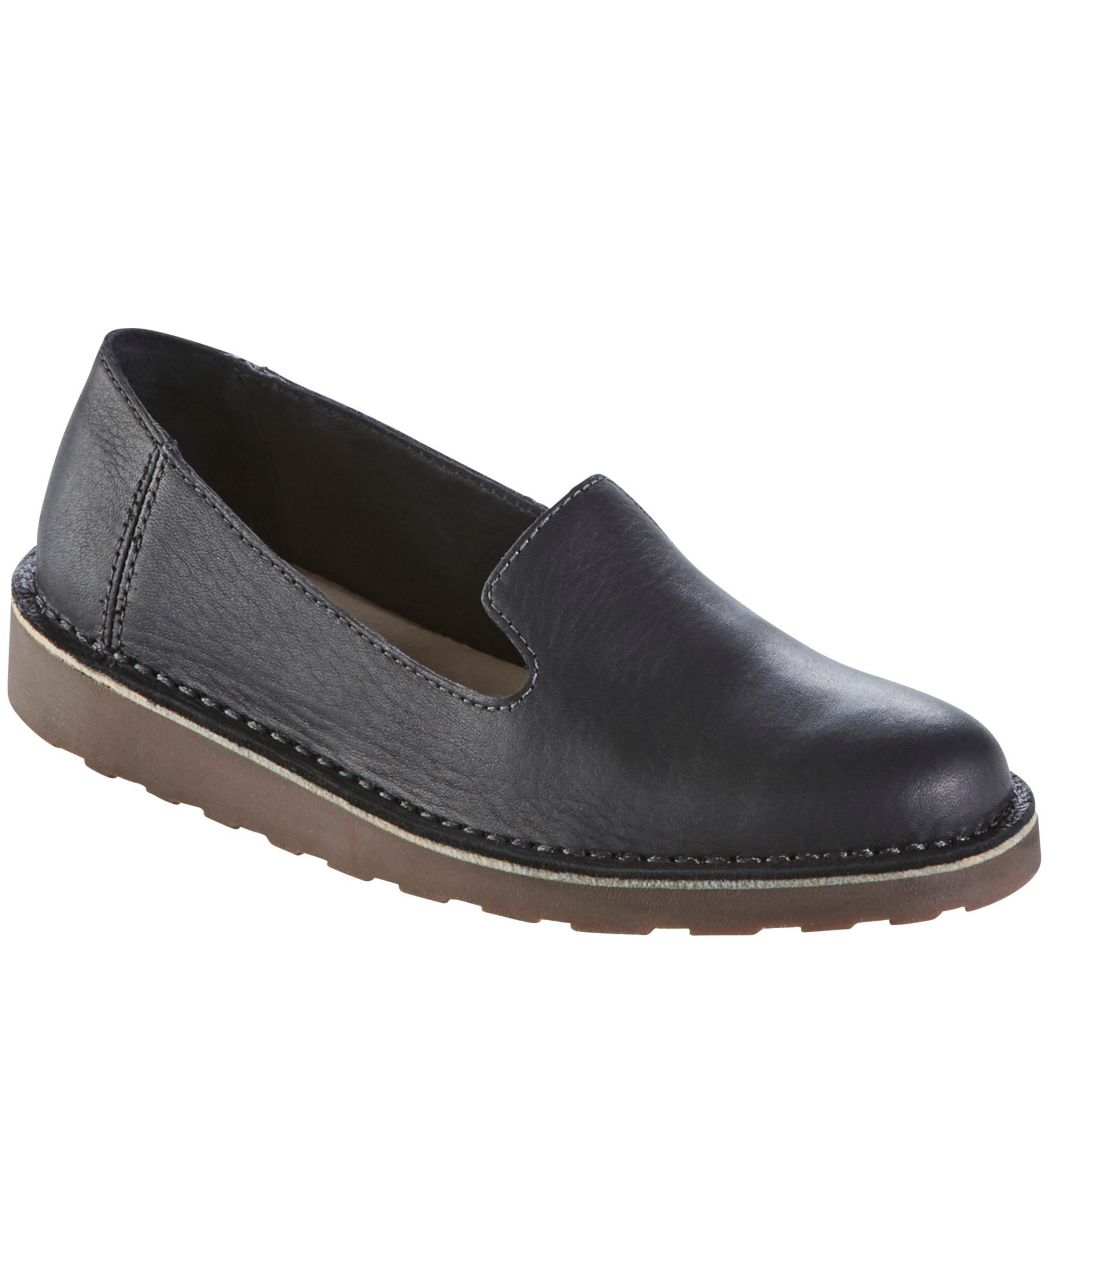 ストニントン・シューズ、レザー／Women's Stonington Shoes, Leather